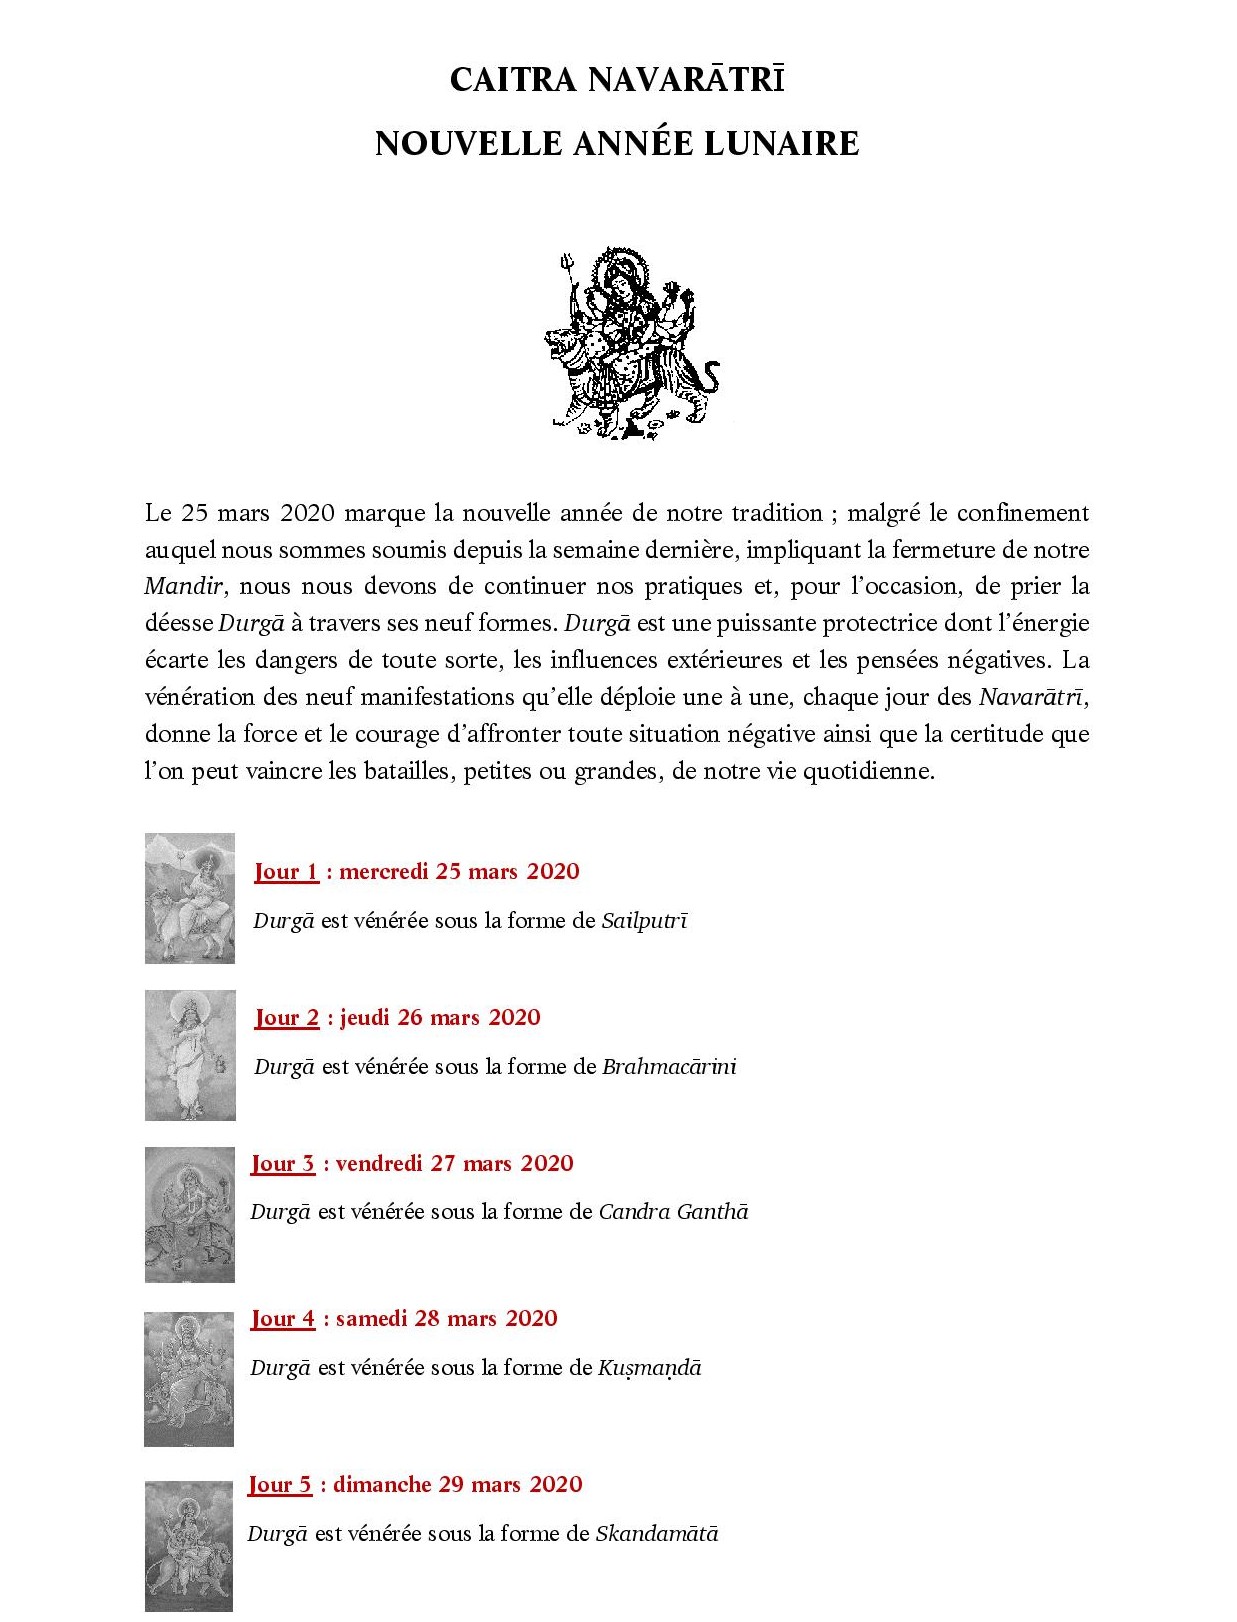 CAITRA NAVARATRI 2020-page-001-1